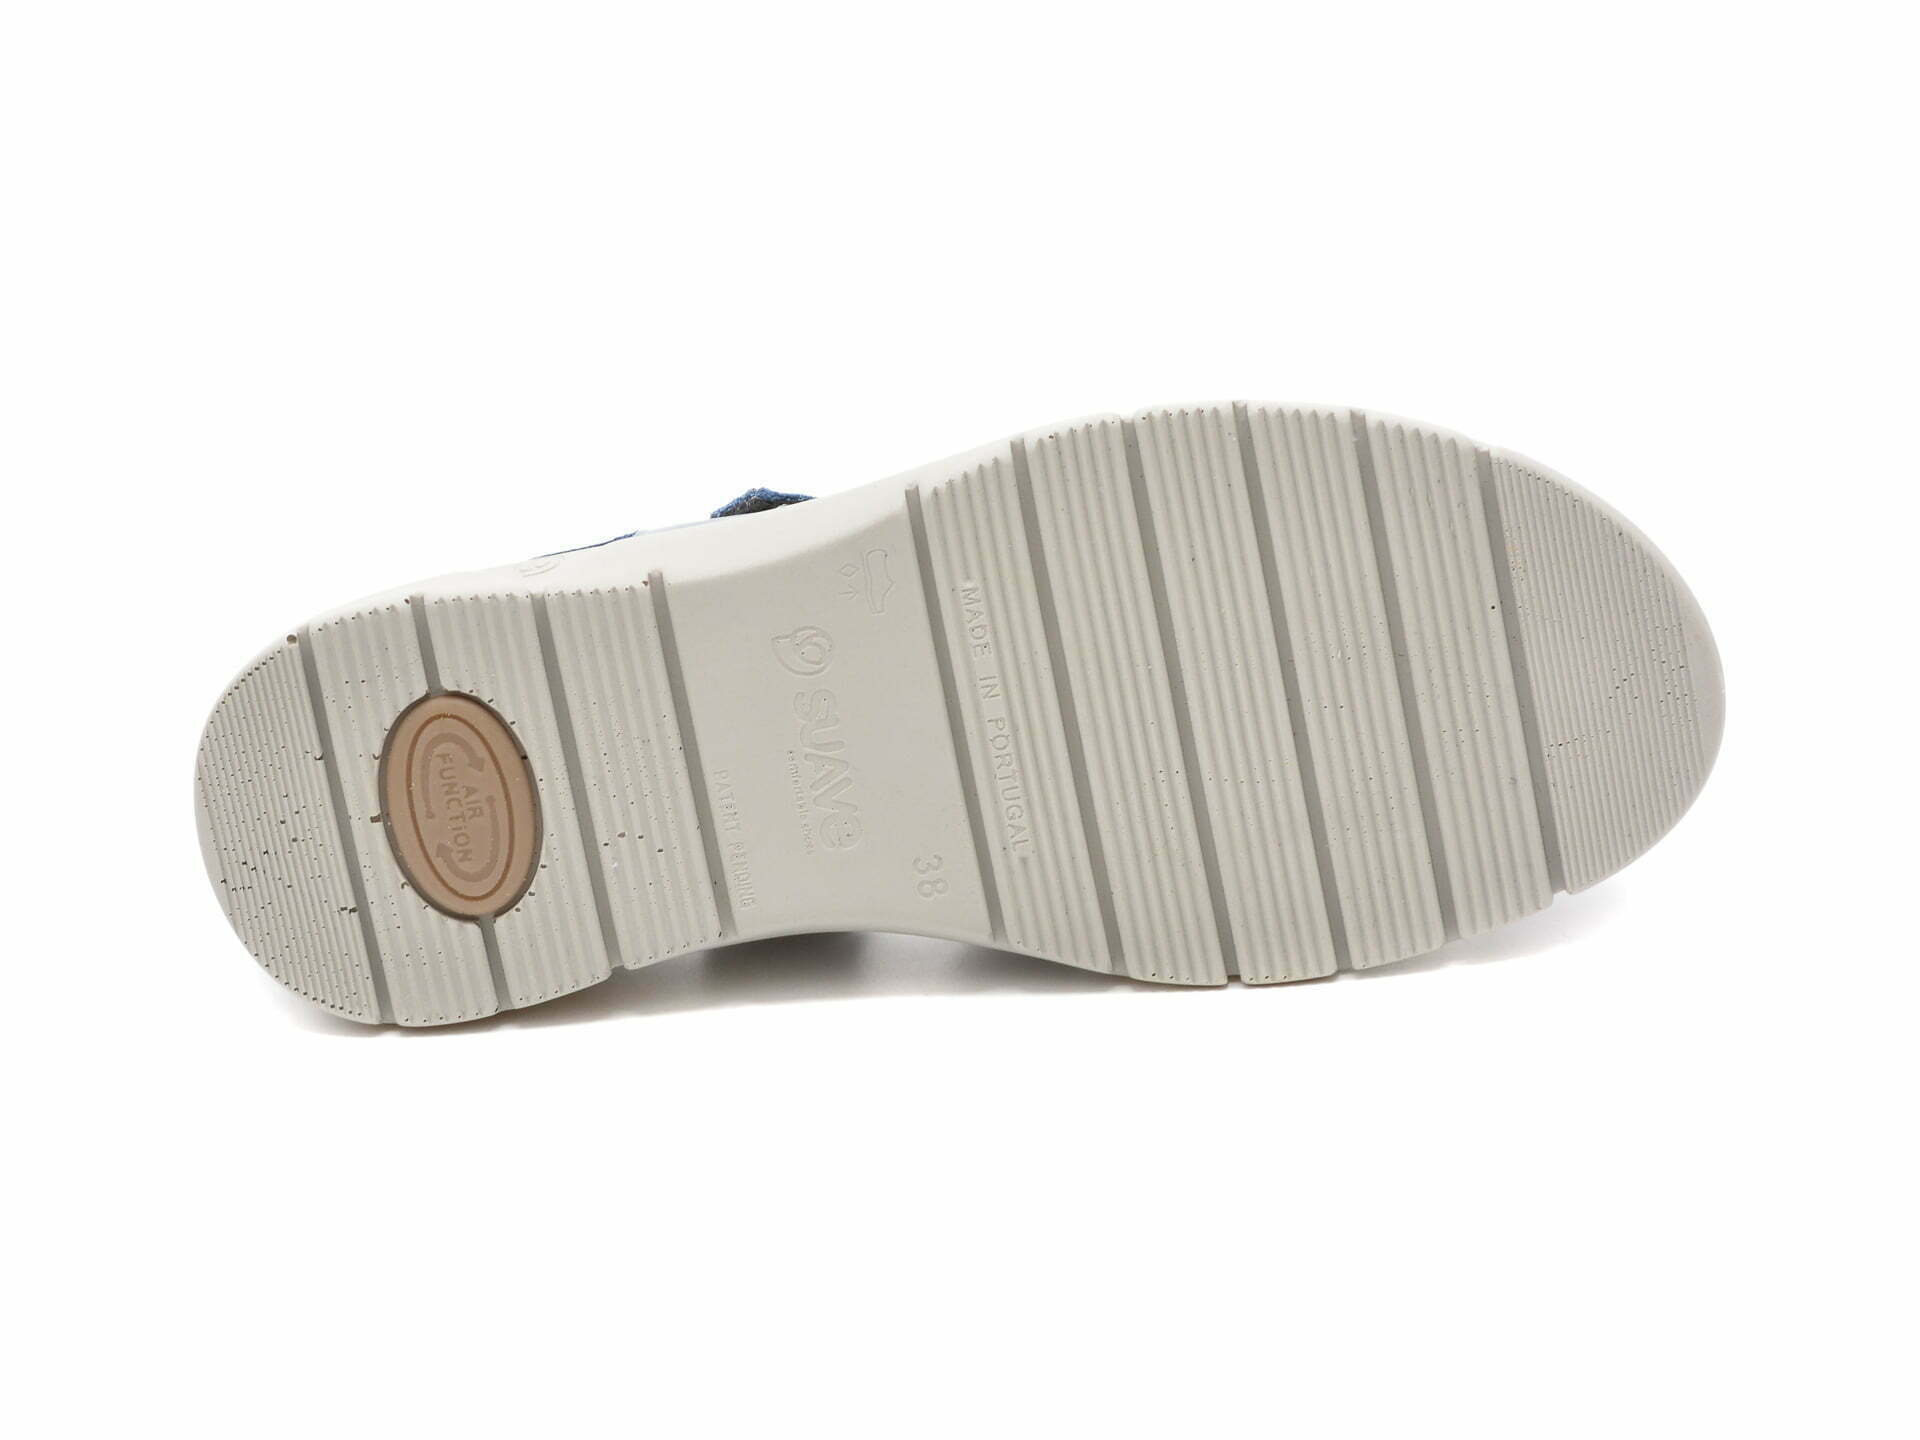 Comandă Încălțăminte Damă, la Reducere  Sandale SUAVE albastre, 12519, din piele naturala Branduri de top ✓